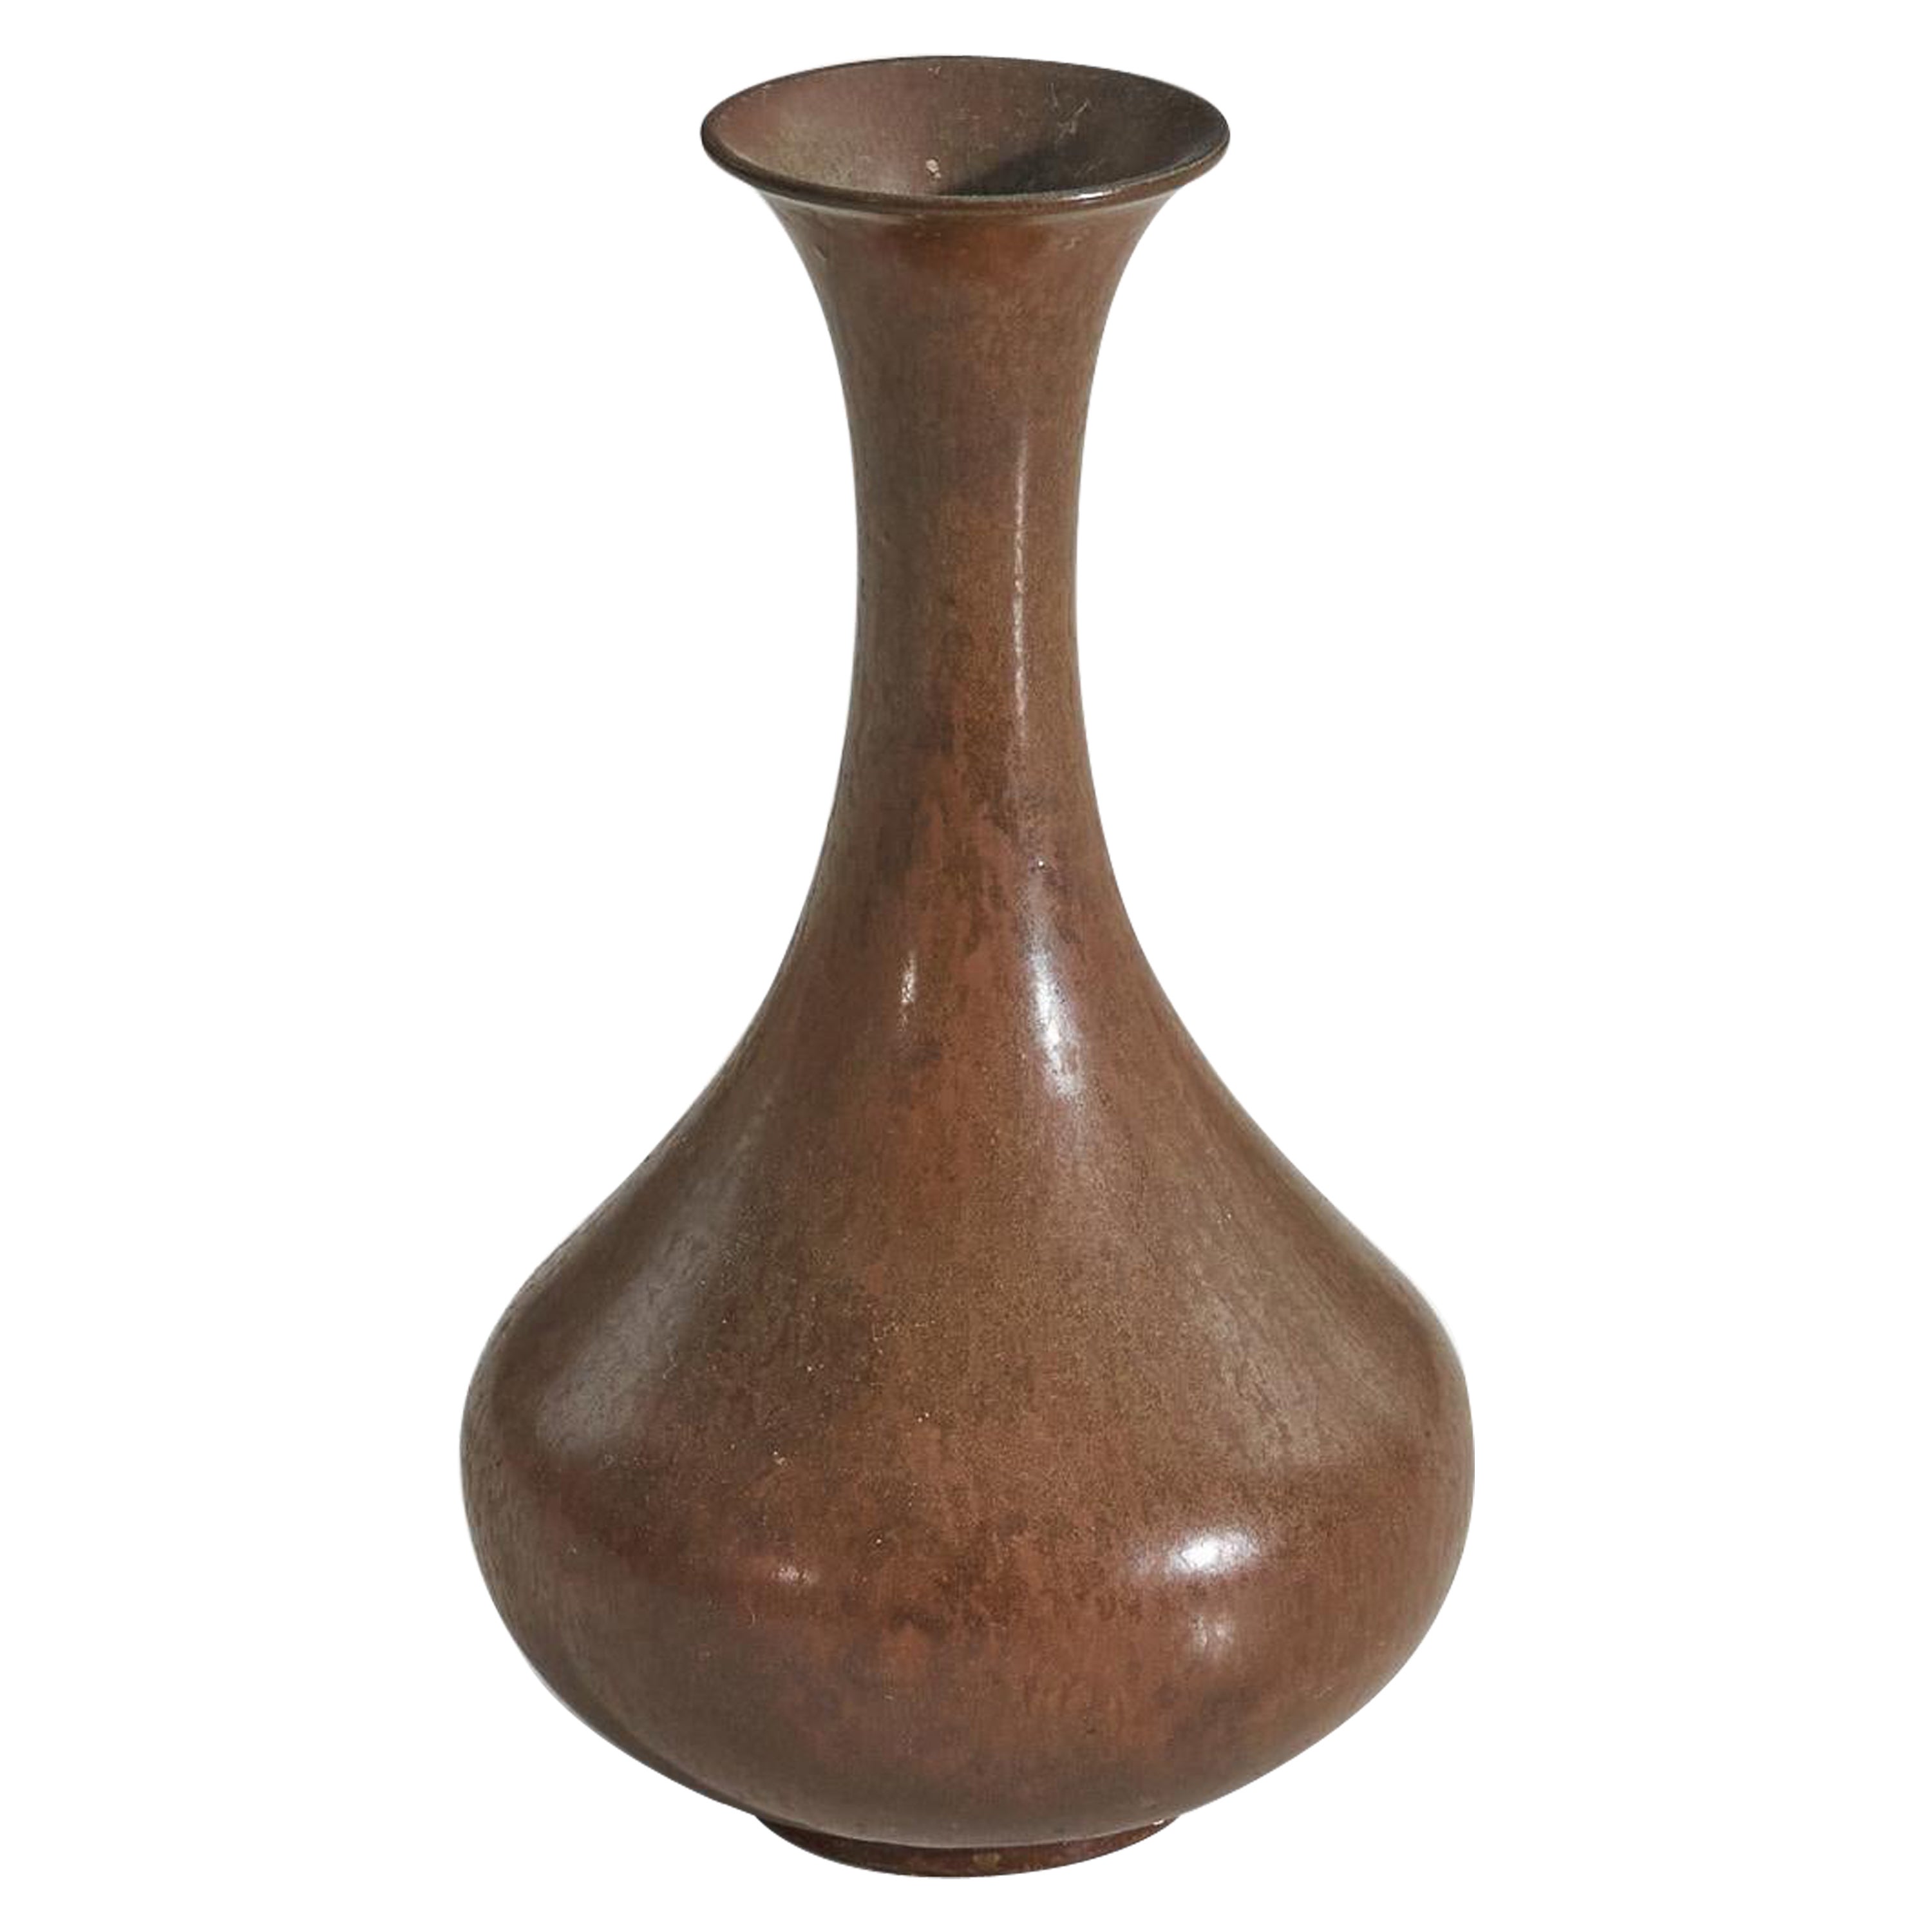 Gunnar Nylund, "ARA" Model Vase, Brown-Glazed Stoneware, Rörstand, Sweden, 1950s